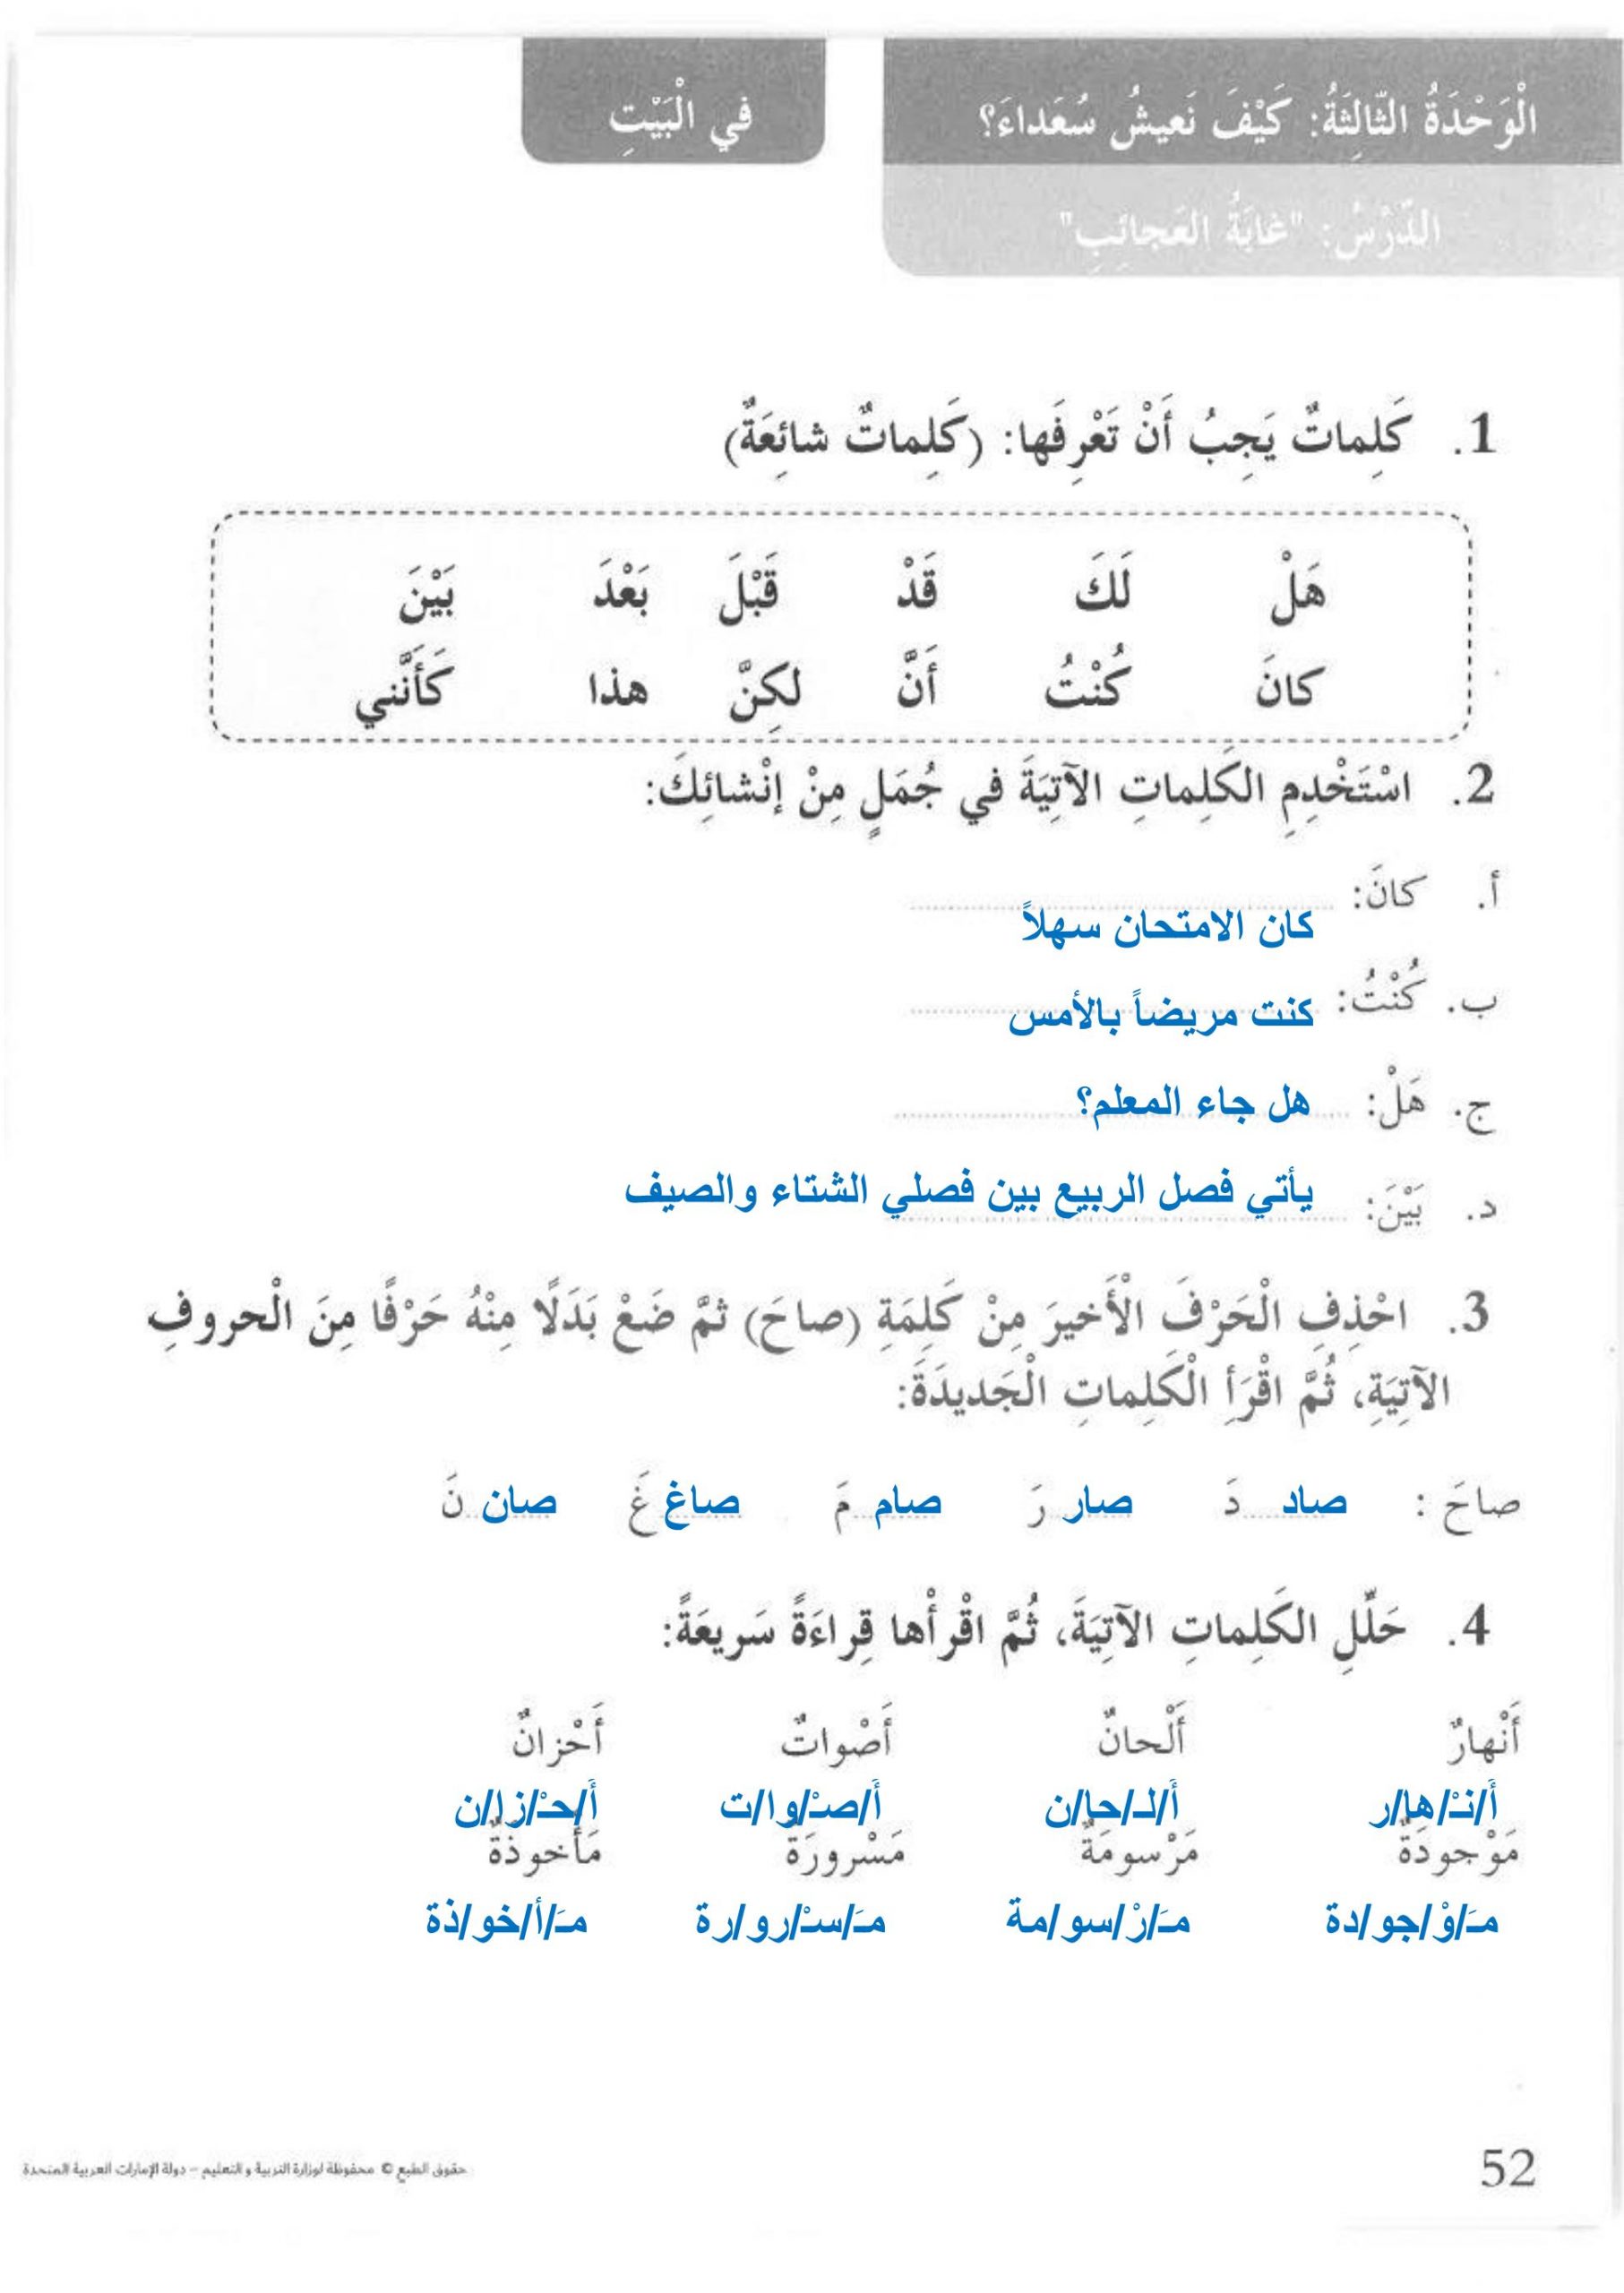 درس غابة العجائب مع الاجابات للصف الثالث مادة اللغة العربية 